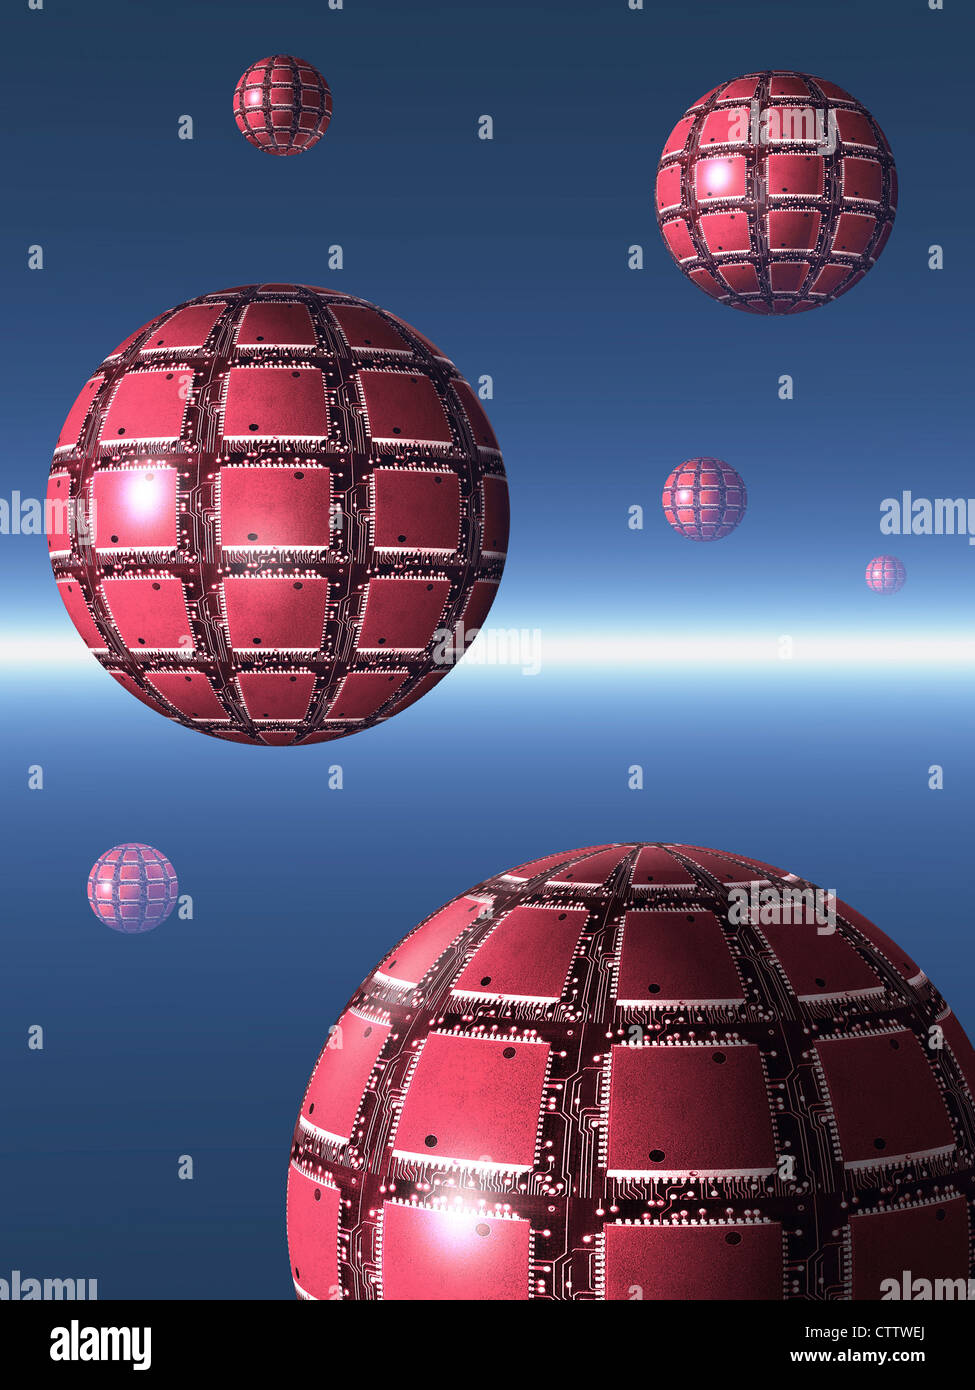 Avec les sphères des puces d'ordinateur sur leur surface flottant dans un espace bleu - Schwebende rote Kugeln aus Computerchips Banque D'Images